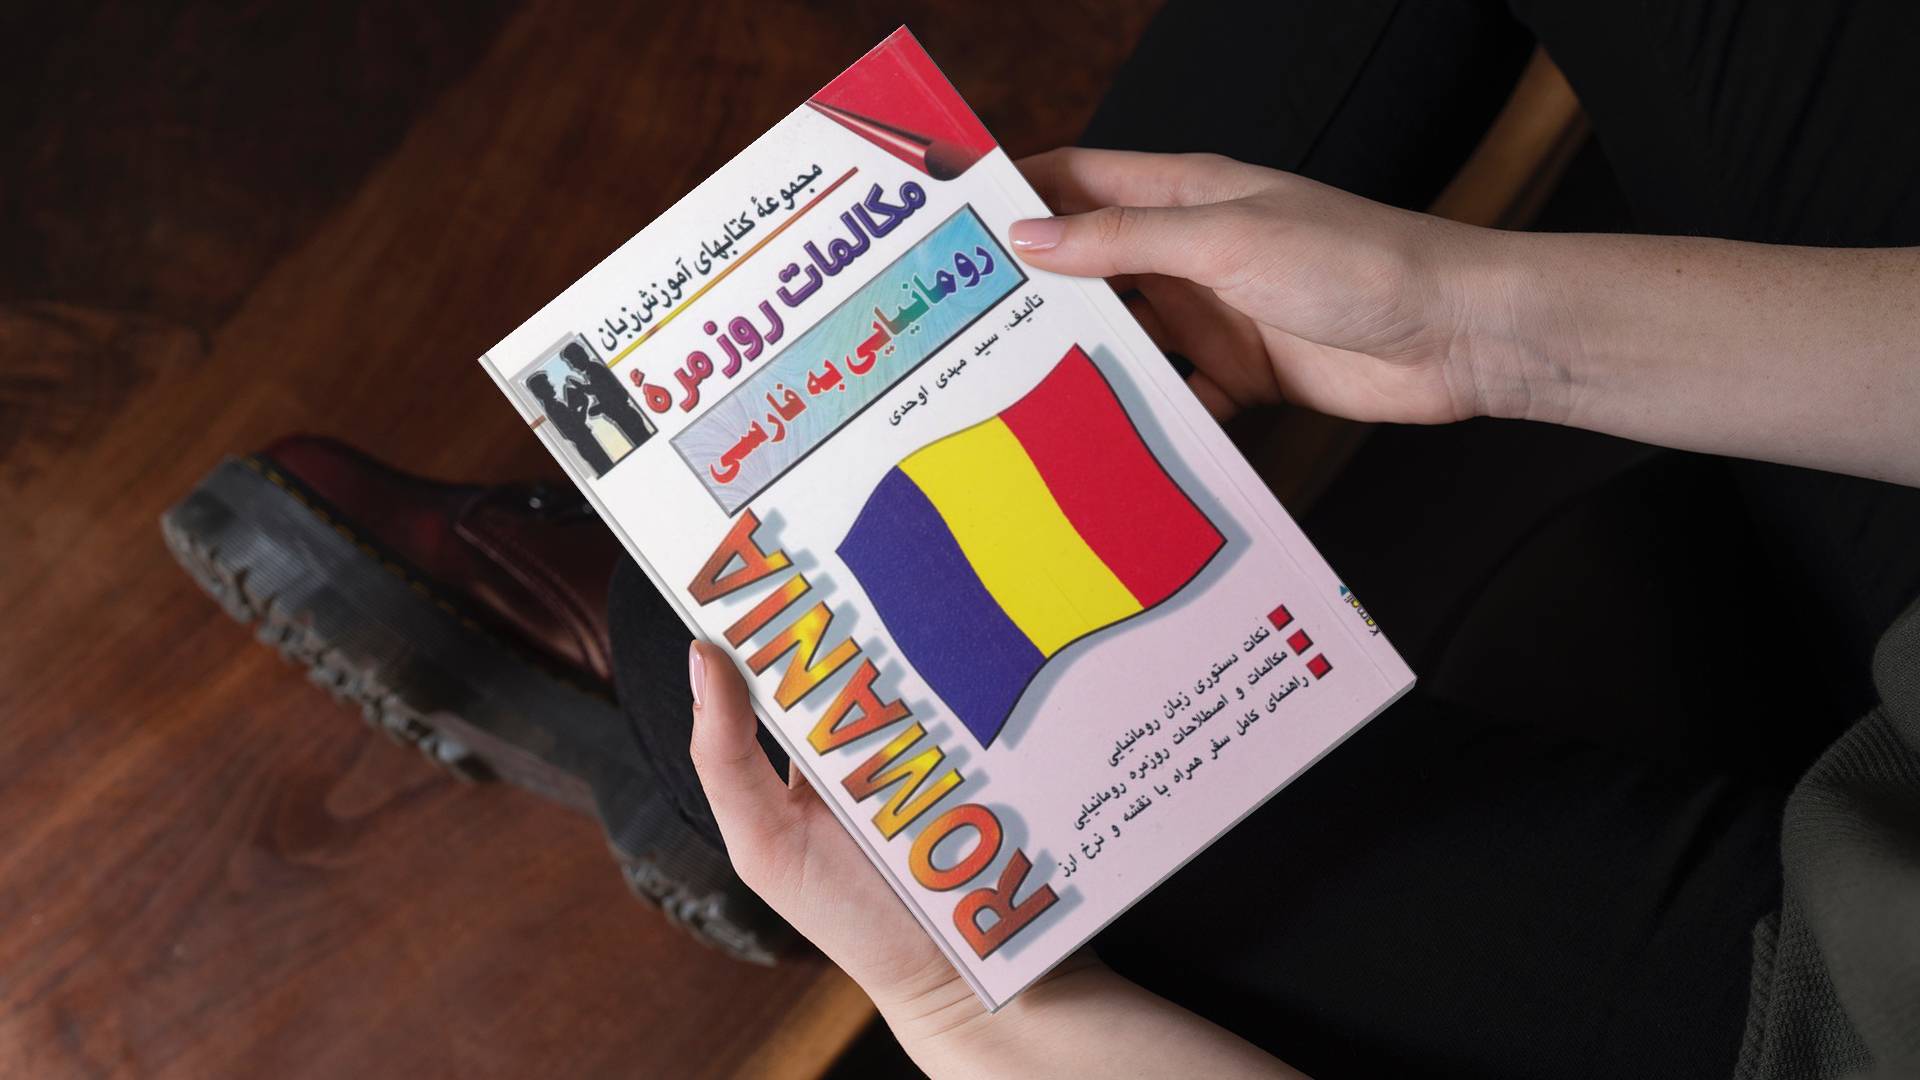 خرید کتاب زبان | زبان استور | کتاب خودآموز زبان رومانیایی | کتاب مکالمات روزمره رومانیایی به فارسی